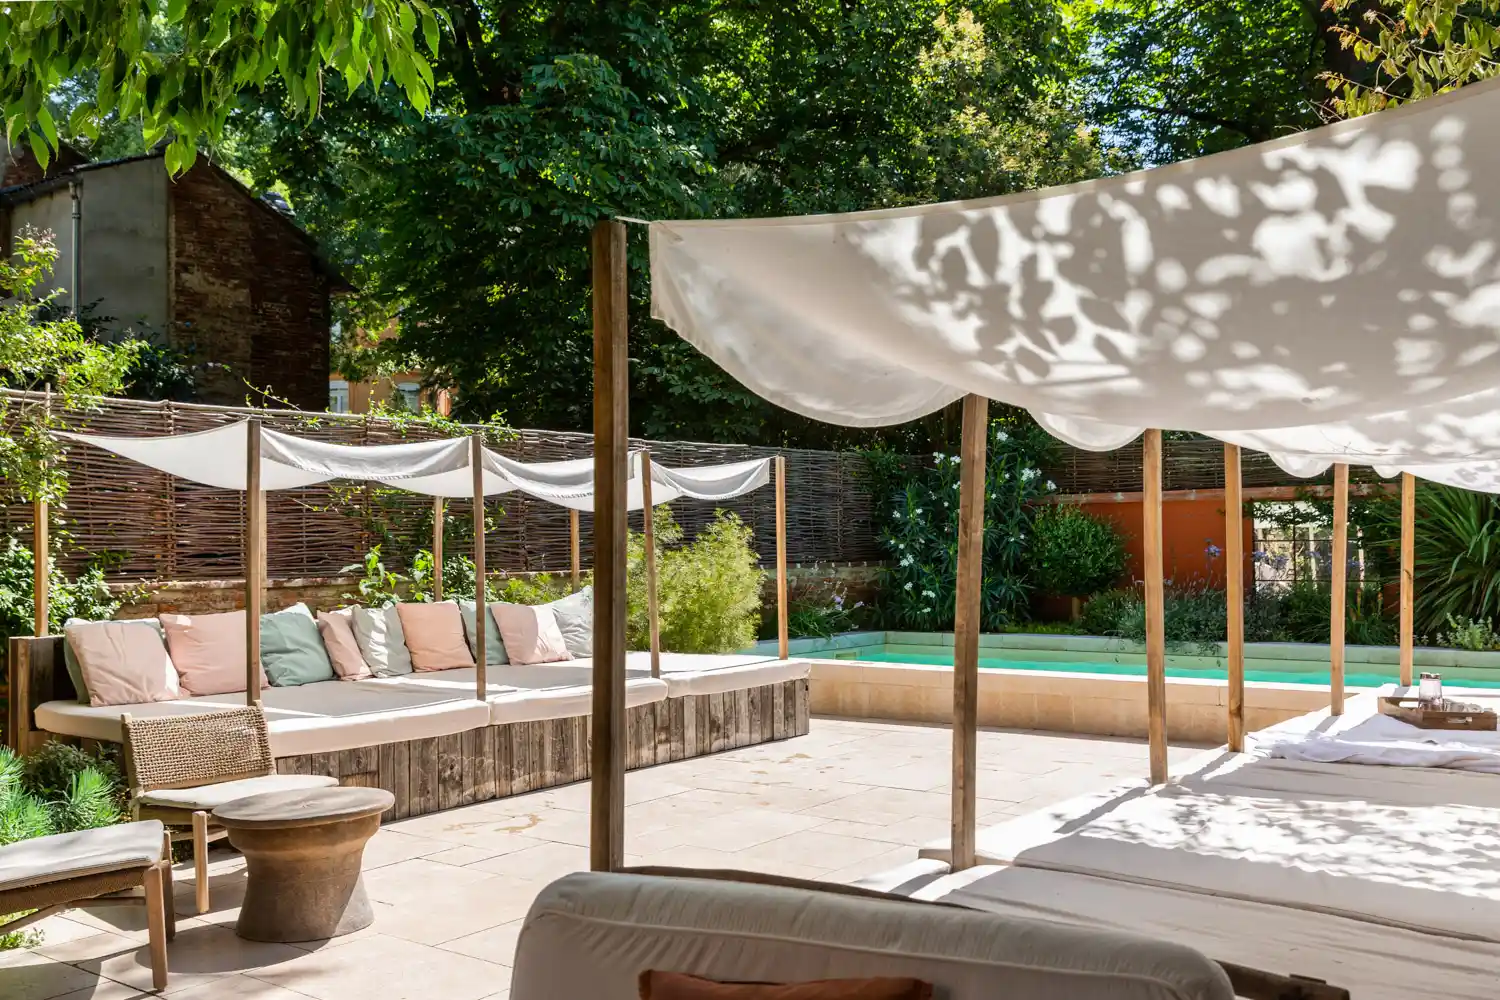 Terrasse et piscine d'un hôtel à Toulouse. Réalisation de photographies pour mettre en valeur les espaces